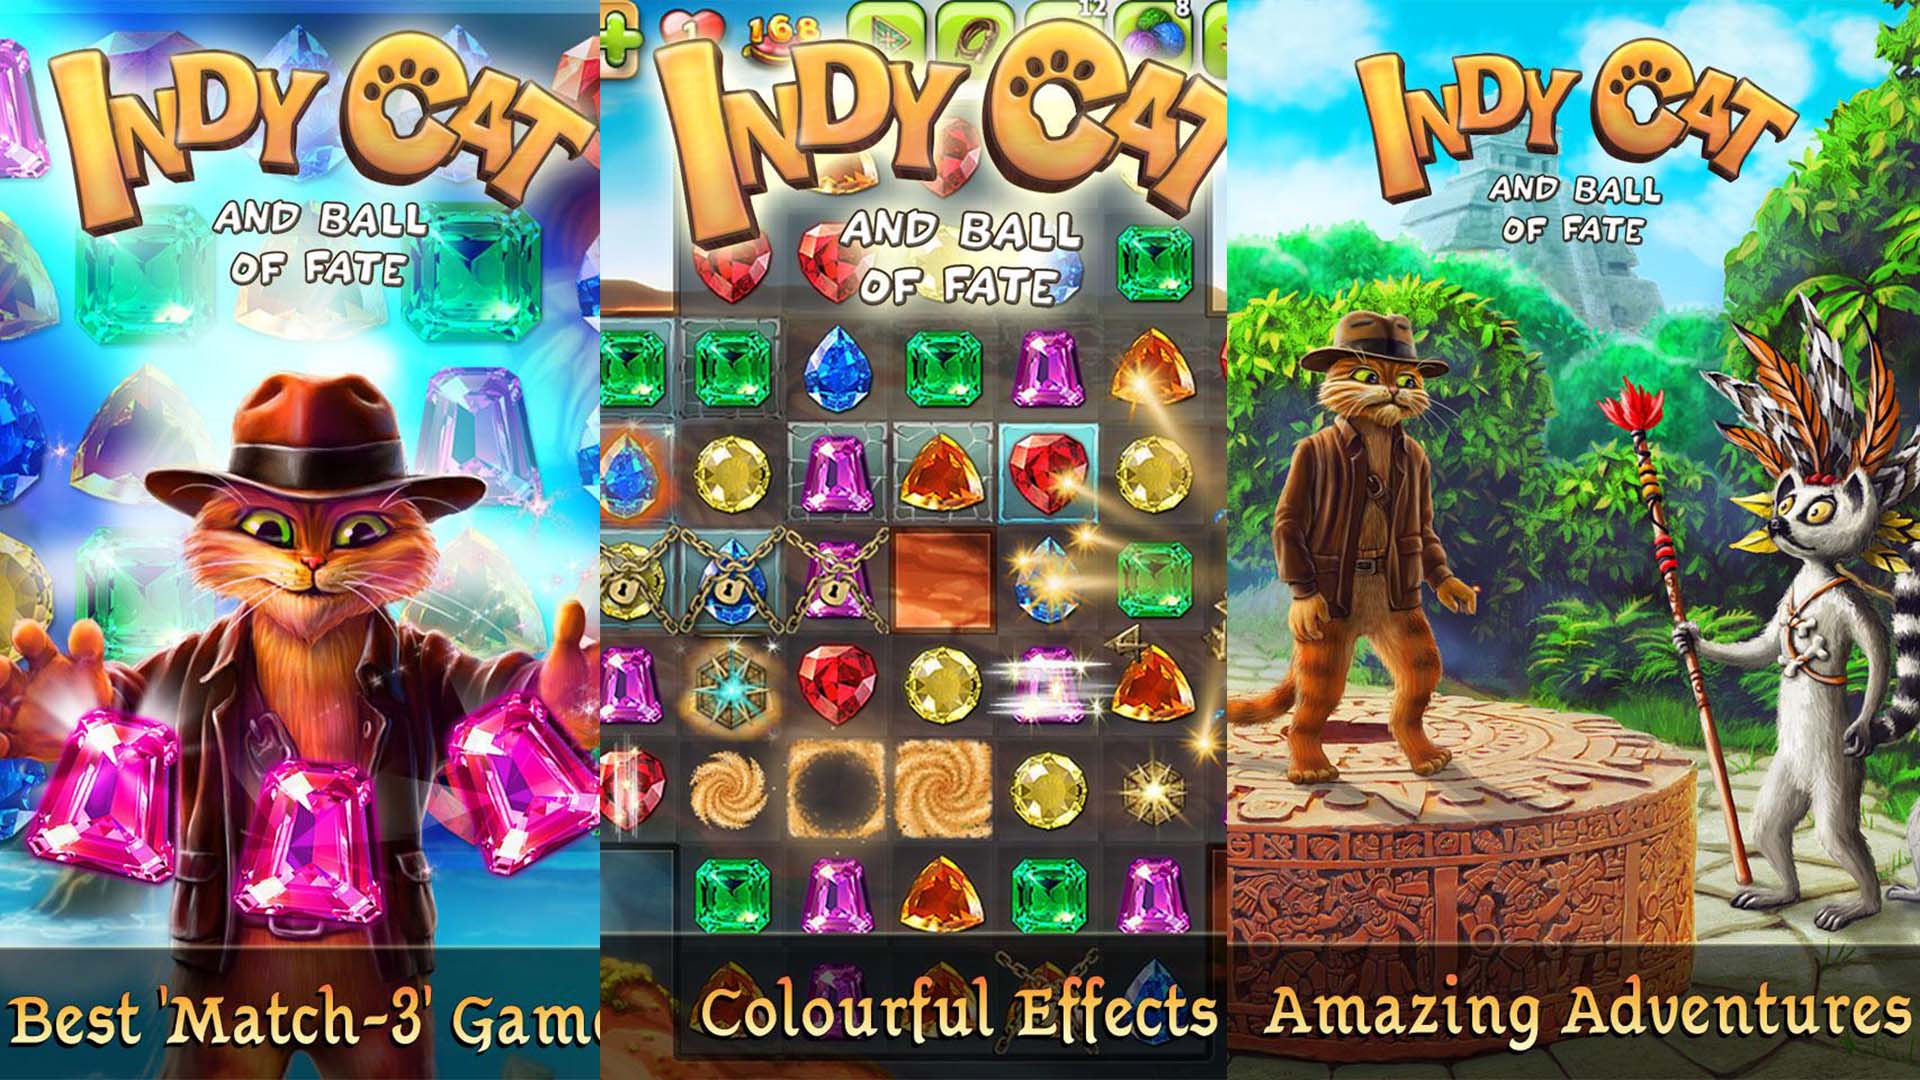 Indy Cat screenshot 2022